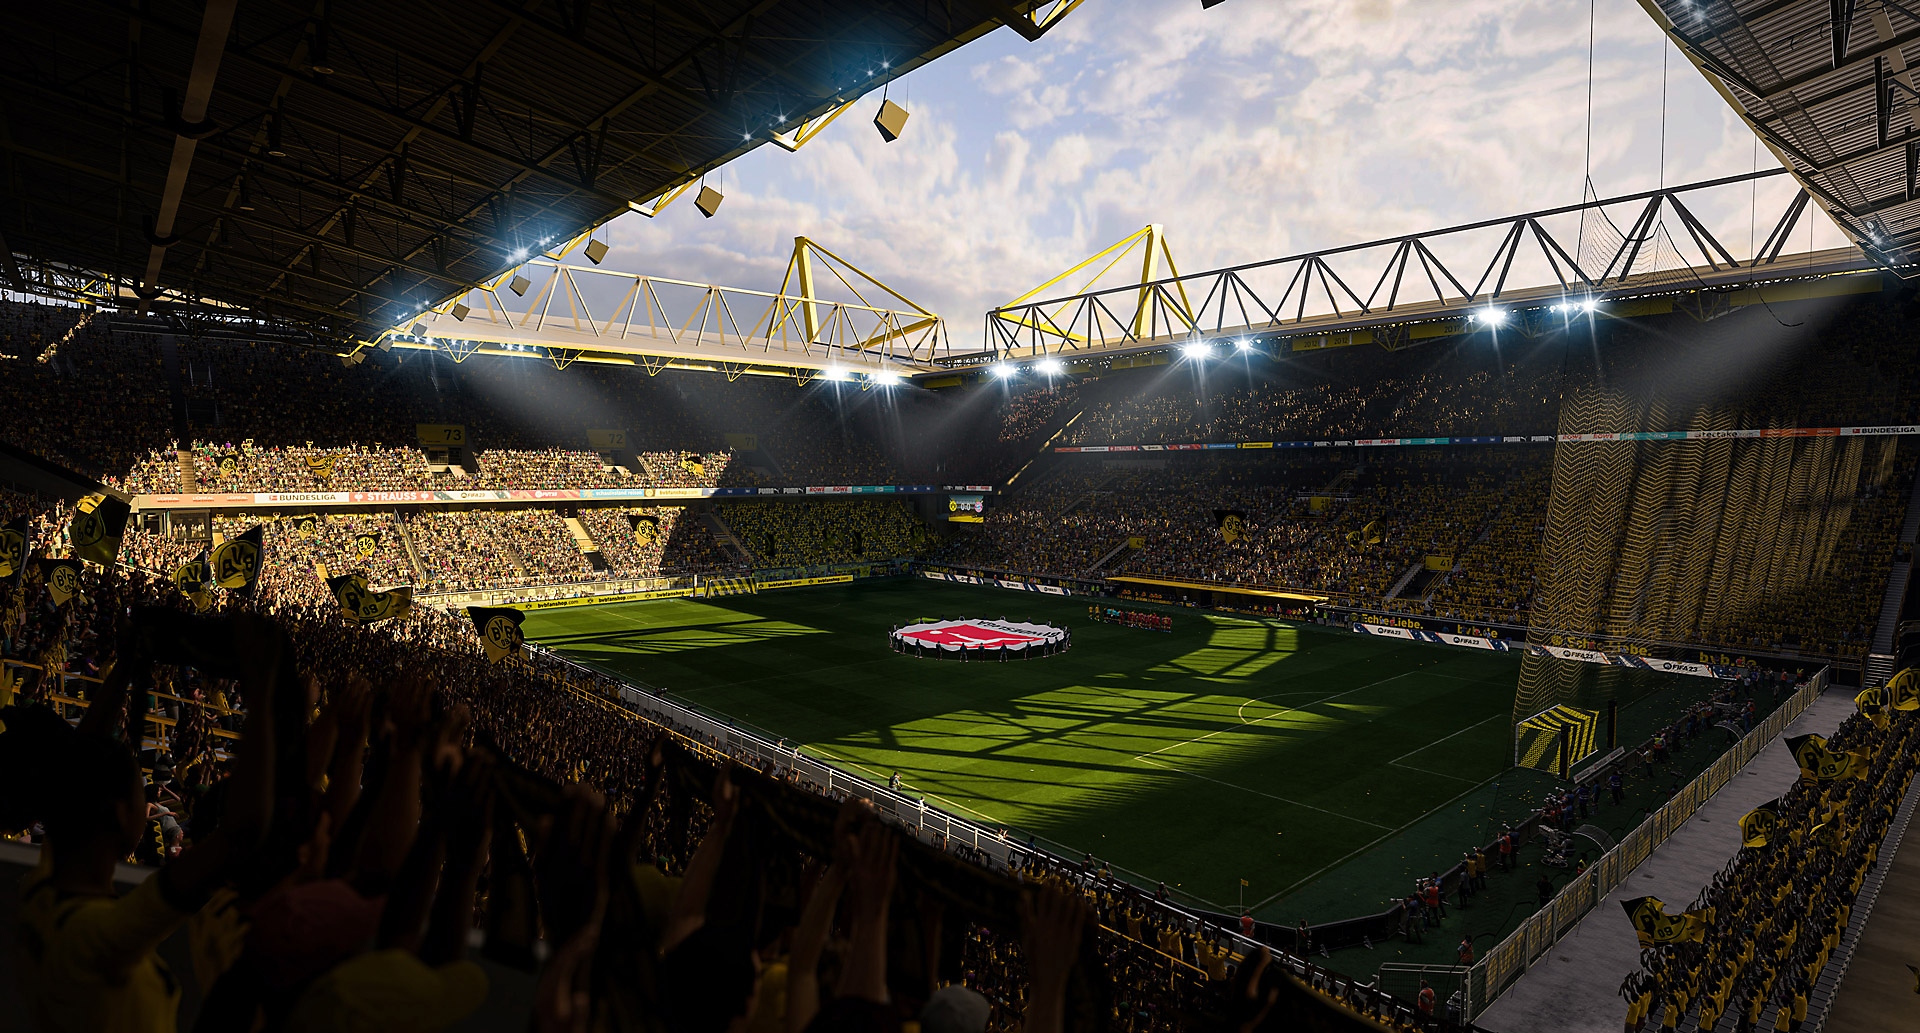 Zrzut ekranu z gry EA Sports FIFA 23 pokazujący stadion piłkarski w słońcu